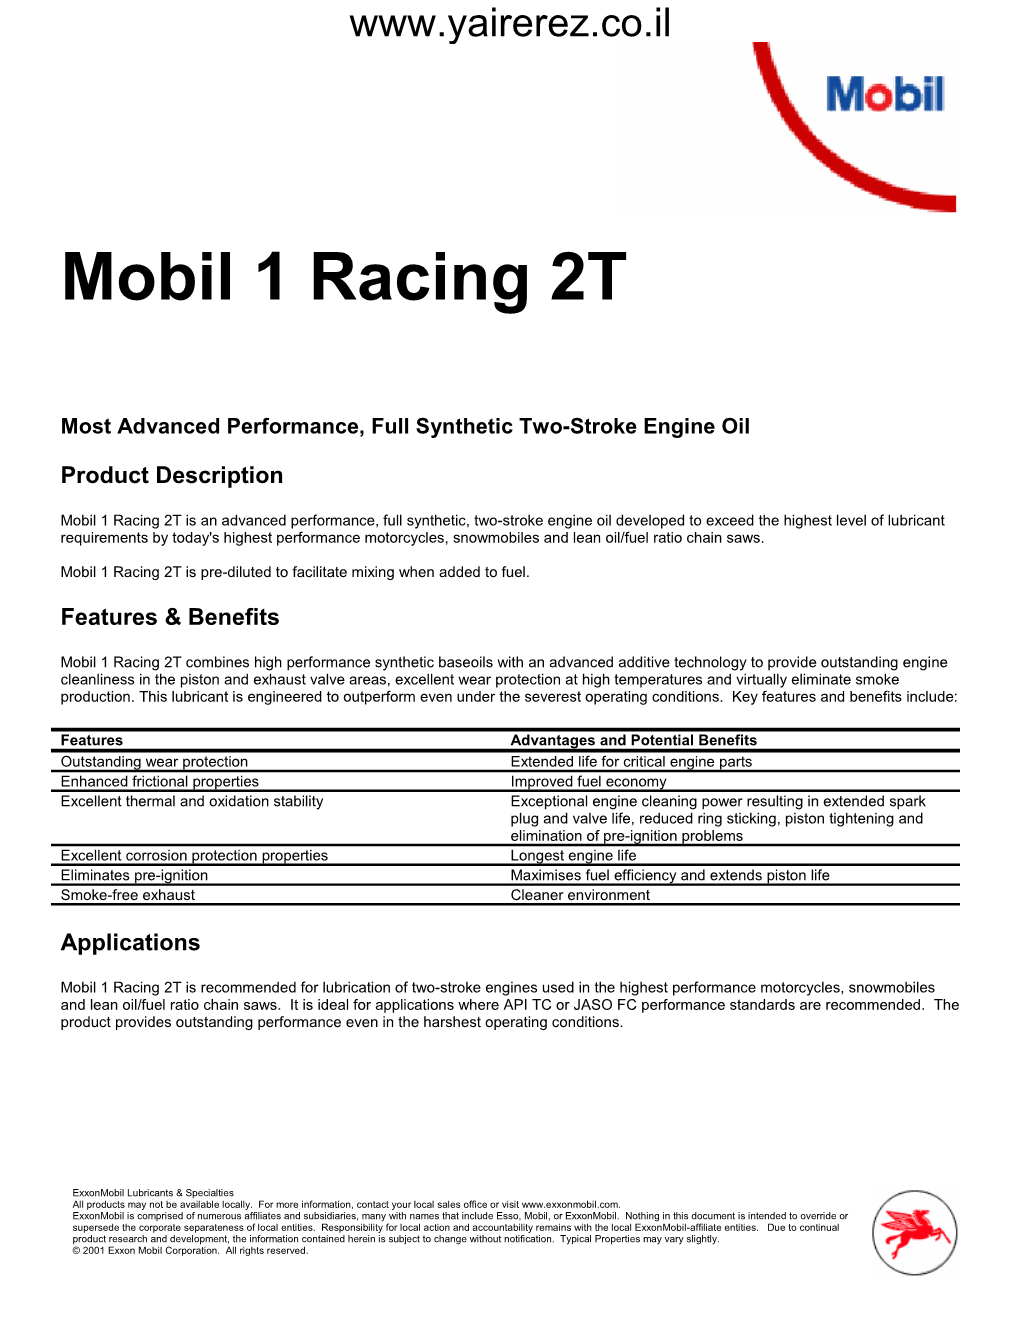 Mobil 1 Racing 2T (PDF)